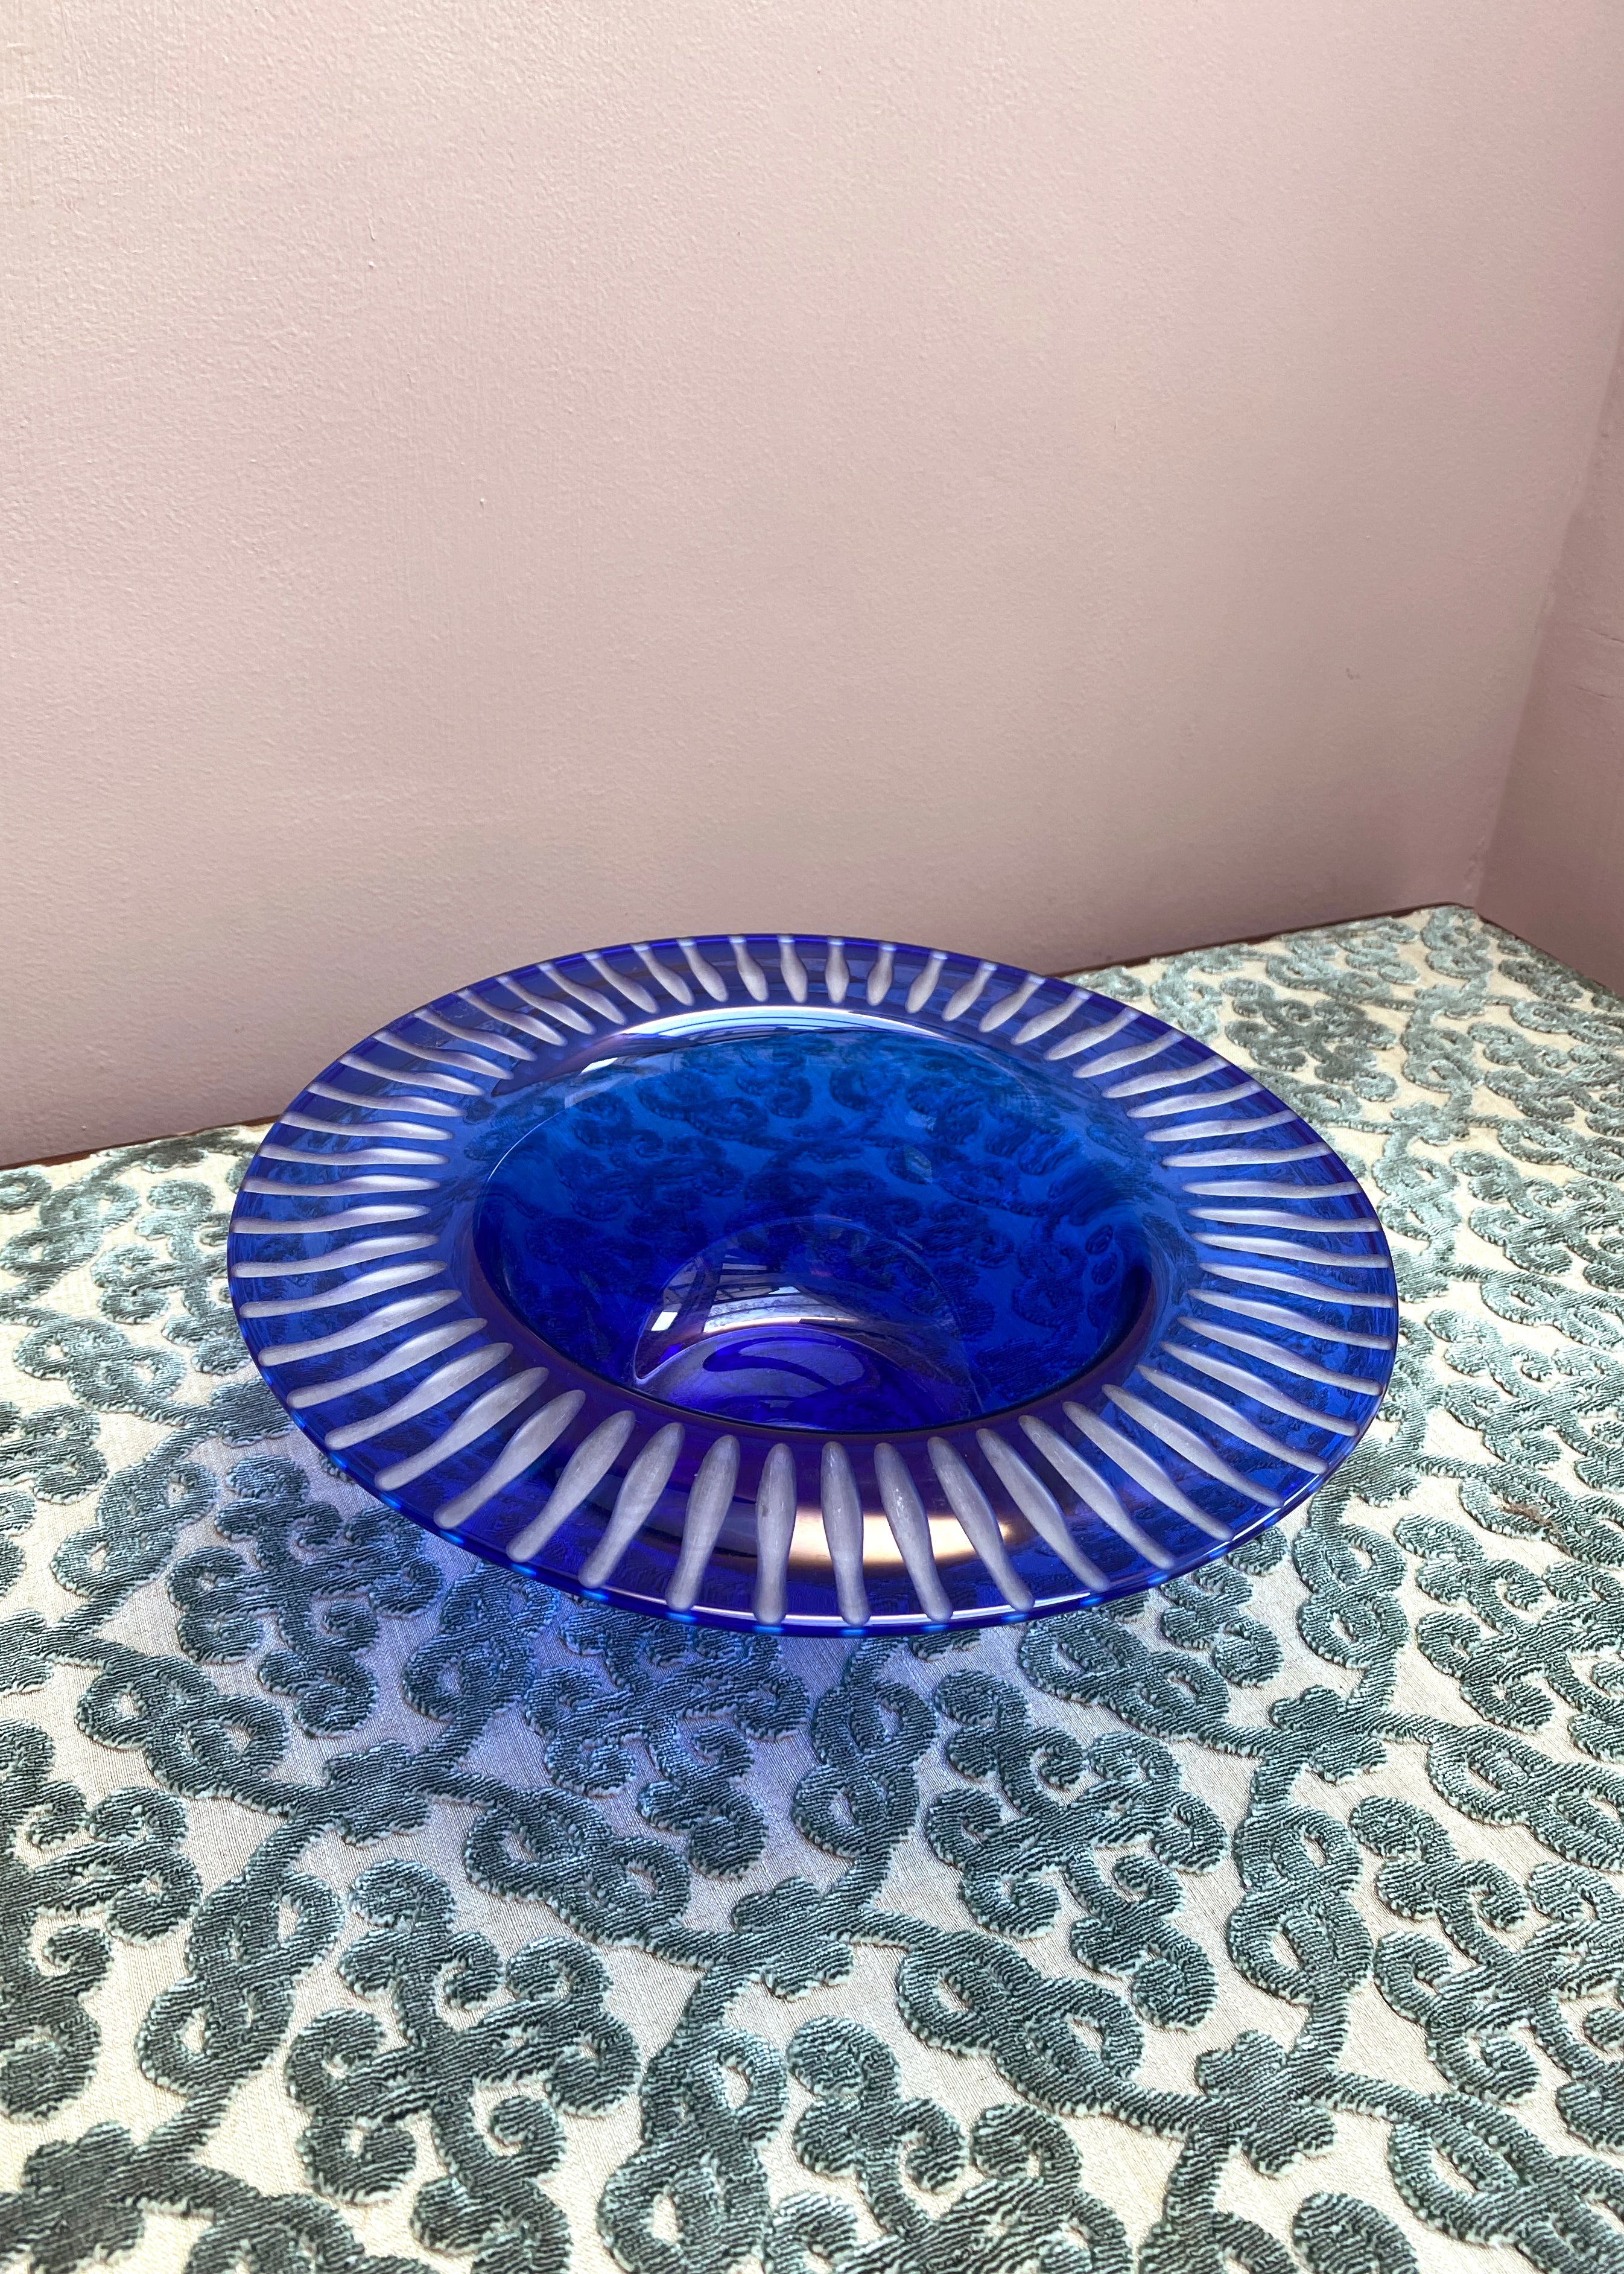 Tiffany & Co. Blue Cut Bowl